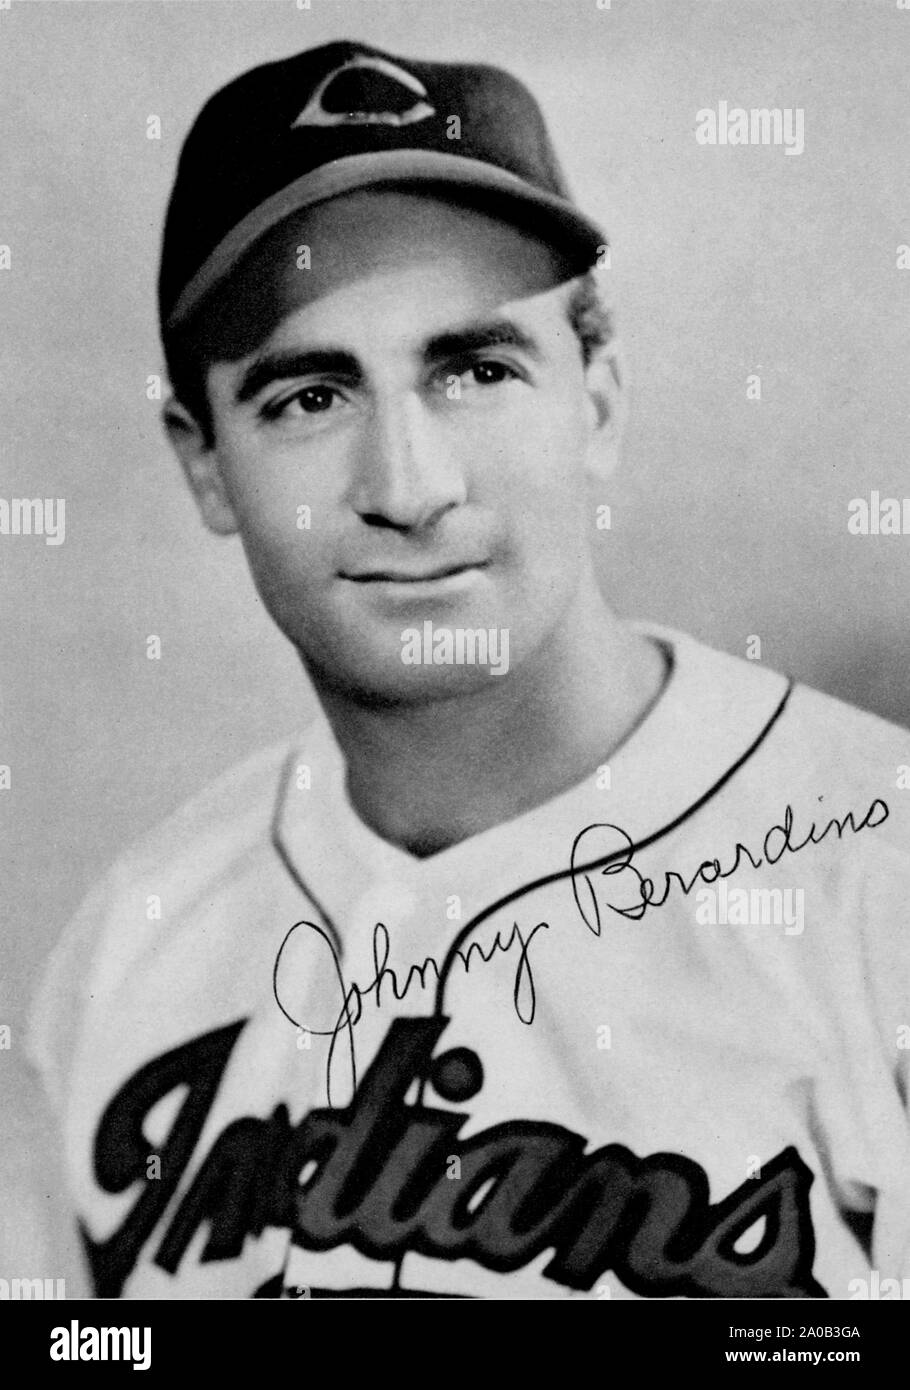 Vintage fotografia del giocatore di baseball Johnny Beradino che ha giocato con i Cleveland Indians negli anni quaranta e cinquanta e più successivamente è diventato un attore che figurano sulla hit TV show General Hospital . Foto Stock